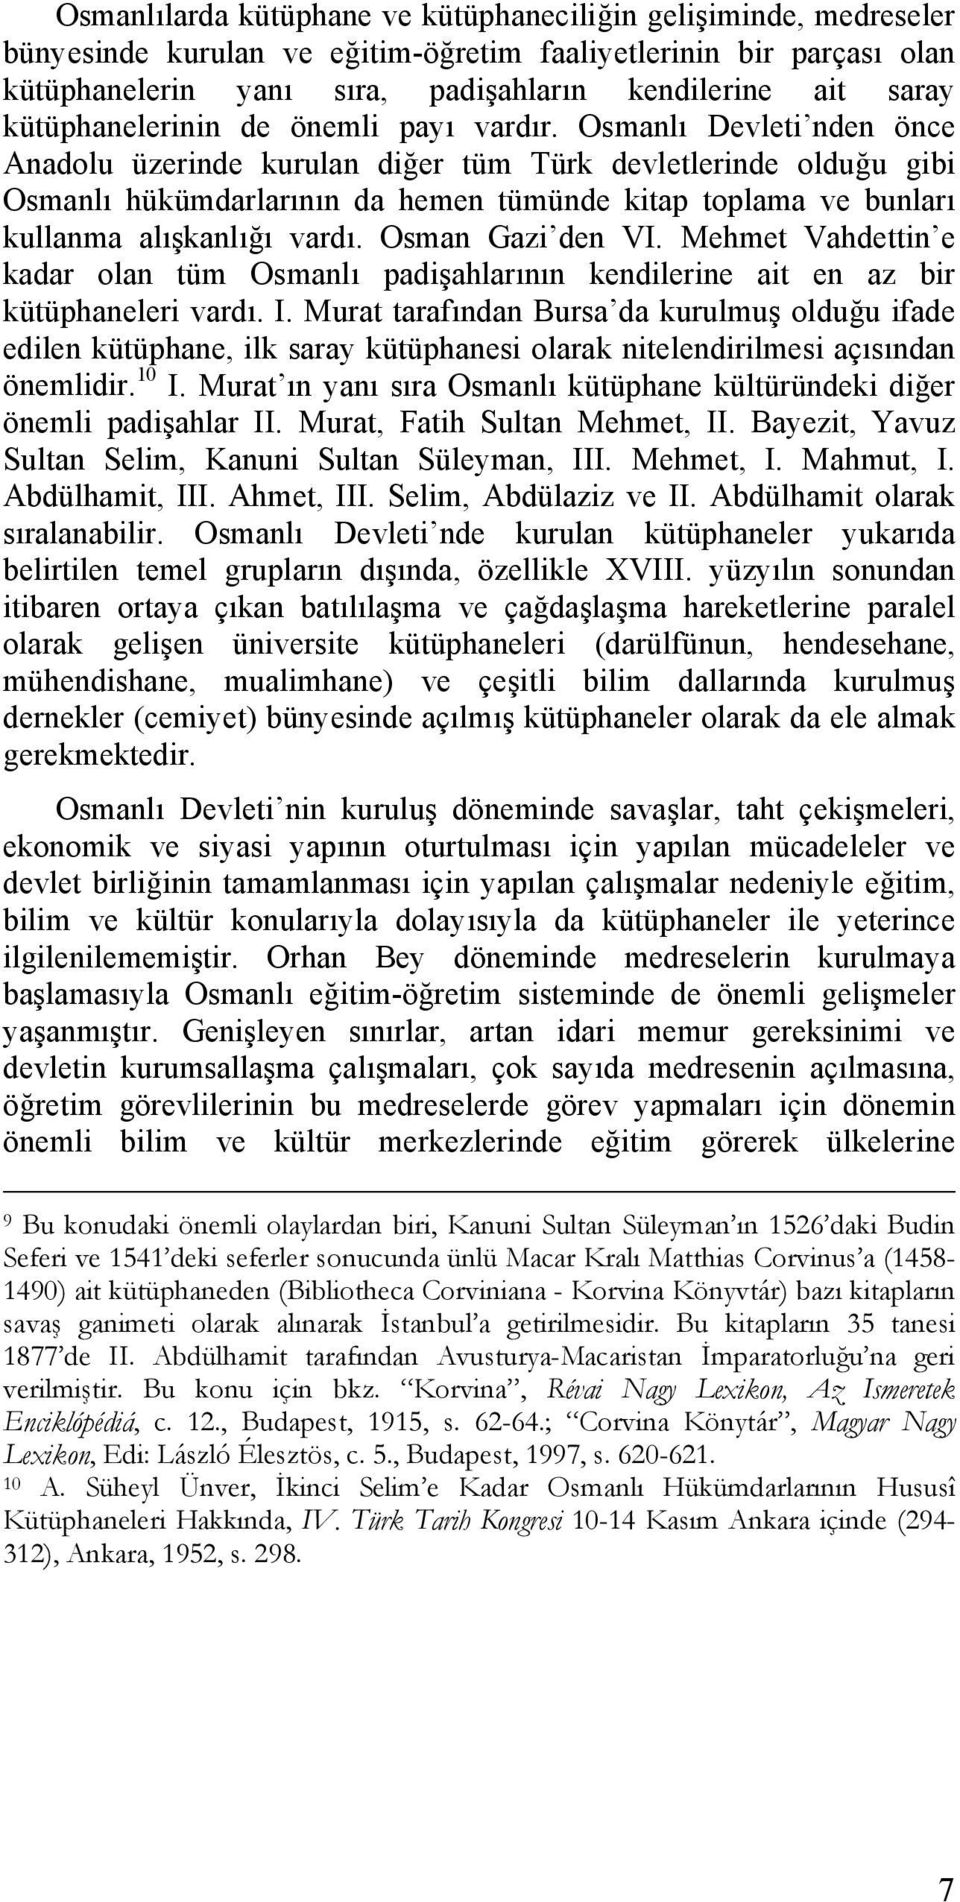 Osmanlı Devleti nden önce Anadolu üzerinde kurulan diğer tüm Türk devletlerinde olduğu gibi Osmanlı hükümdarlarının da hemen tümünde kitap toplama ve bunları kullanma alışkanlığı vardı.